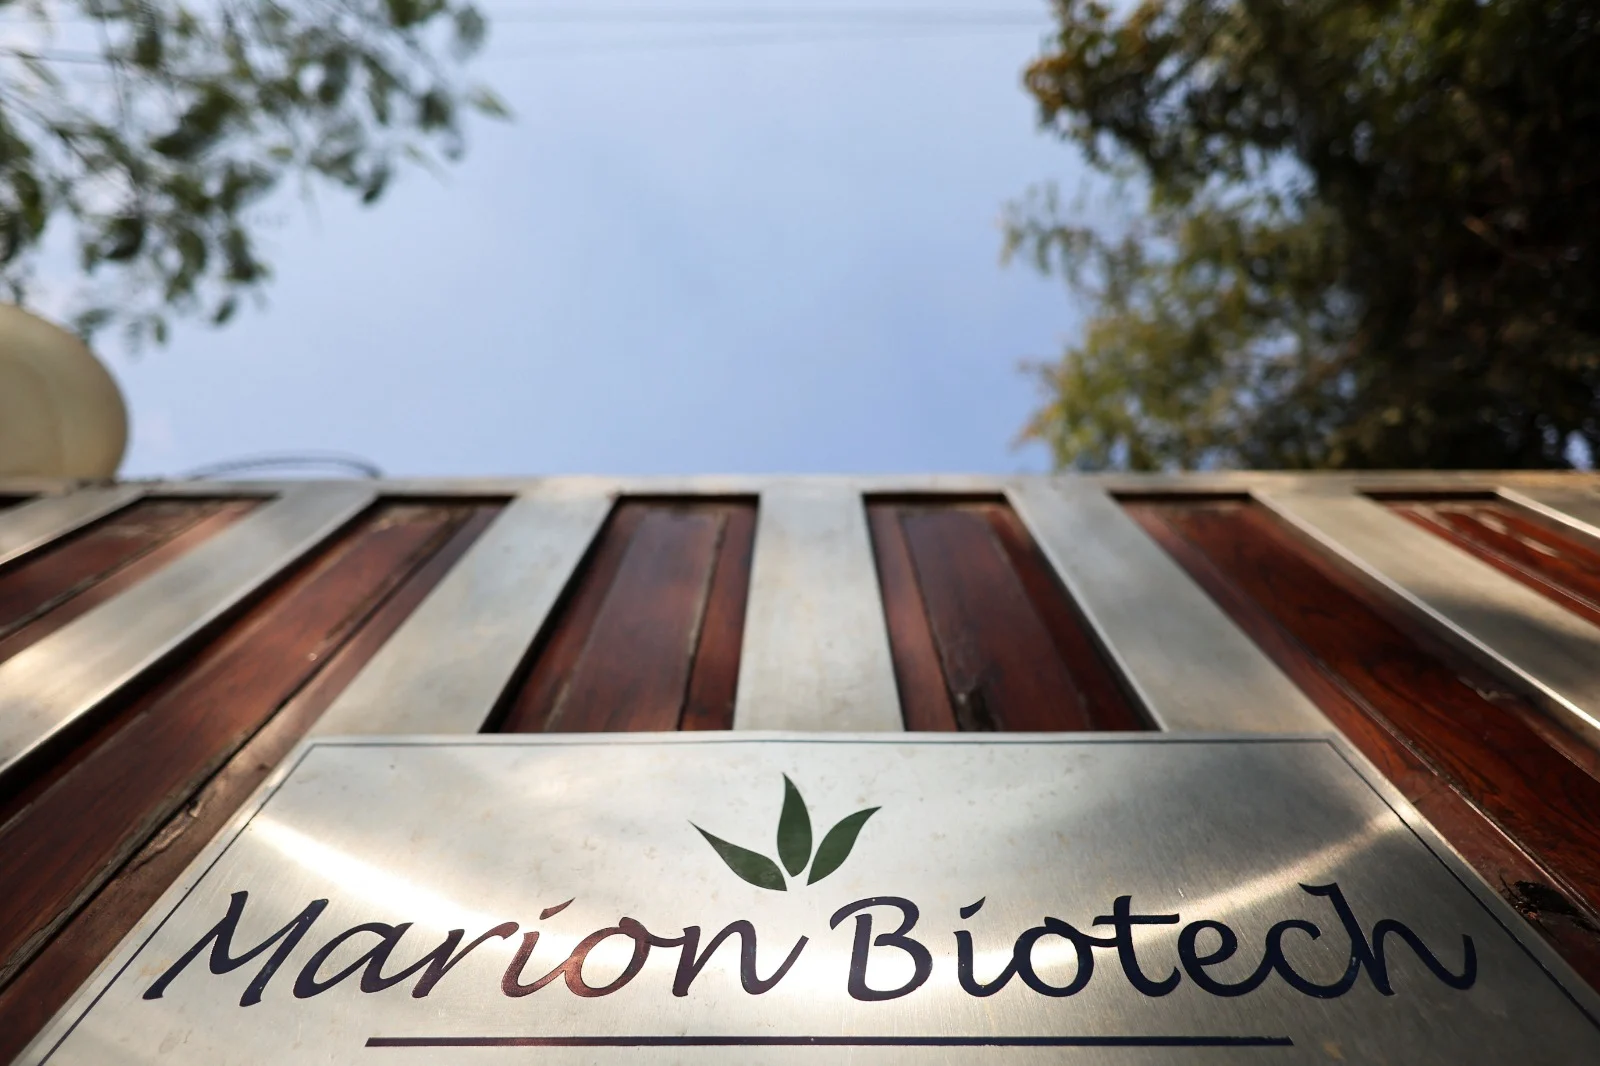 חברת Marion Biotech, אחת מיצרניות הסירופים